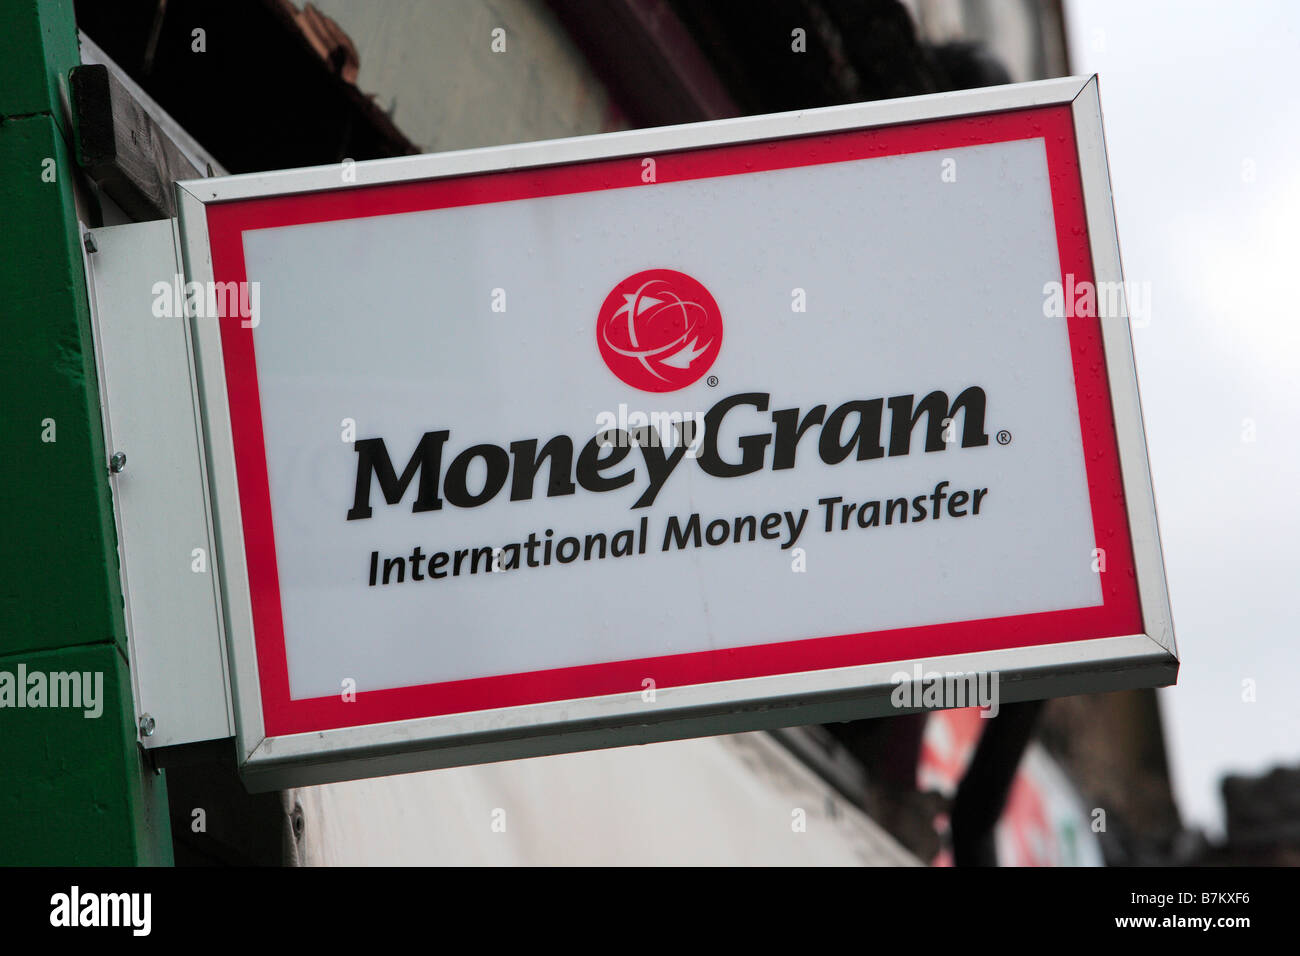 Moneygram Money Transfer Shop Banque d'image et photos - Alamy